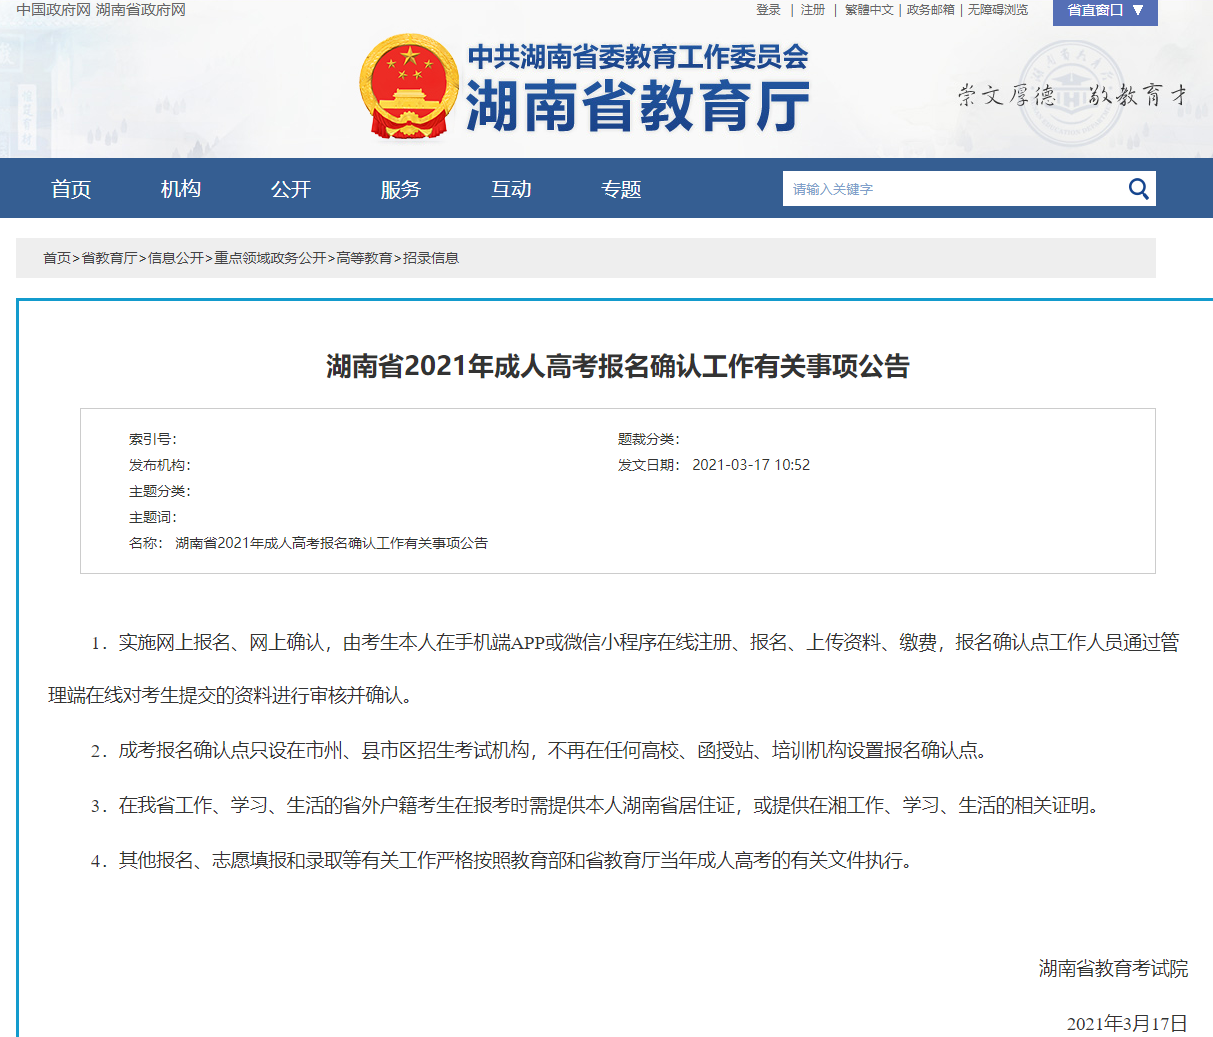 2021年湖南省成人高考报名确认工作有关事项通知(图1)